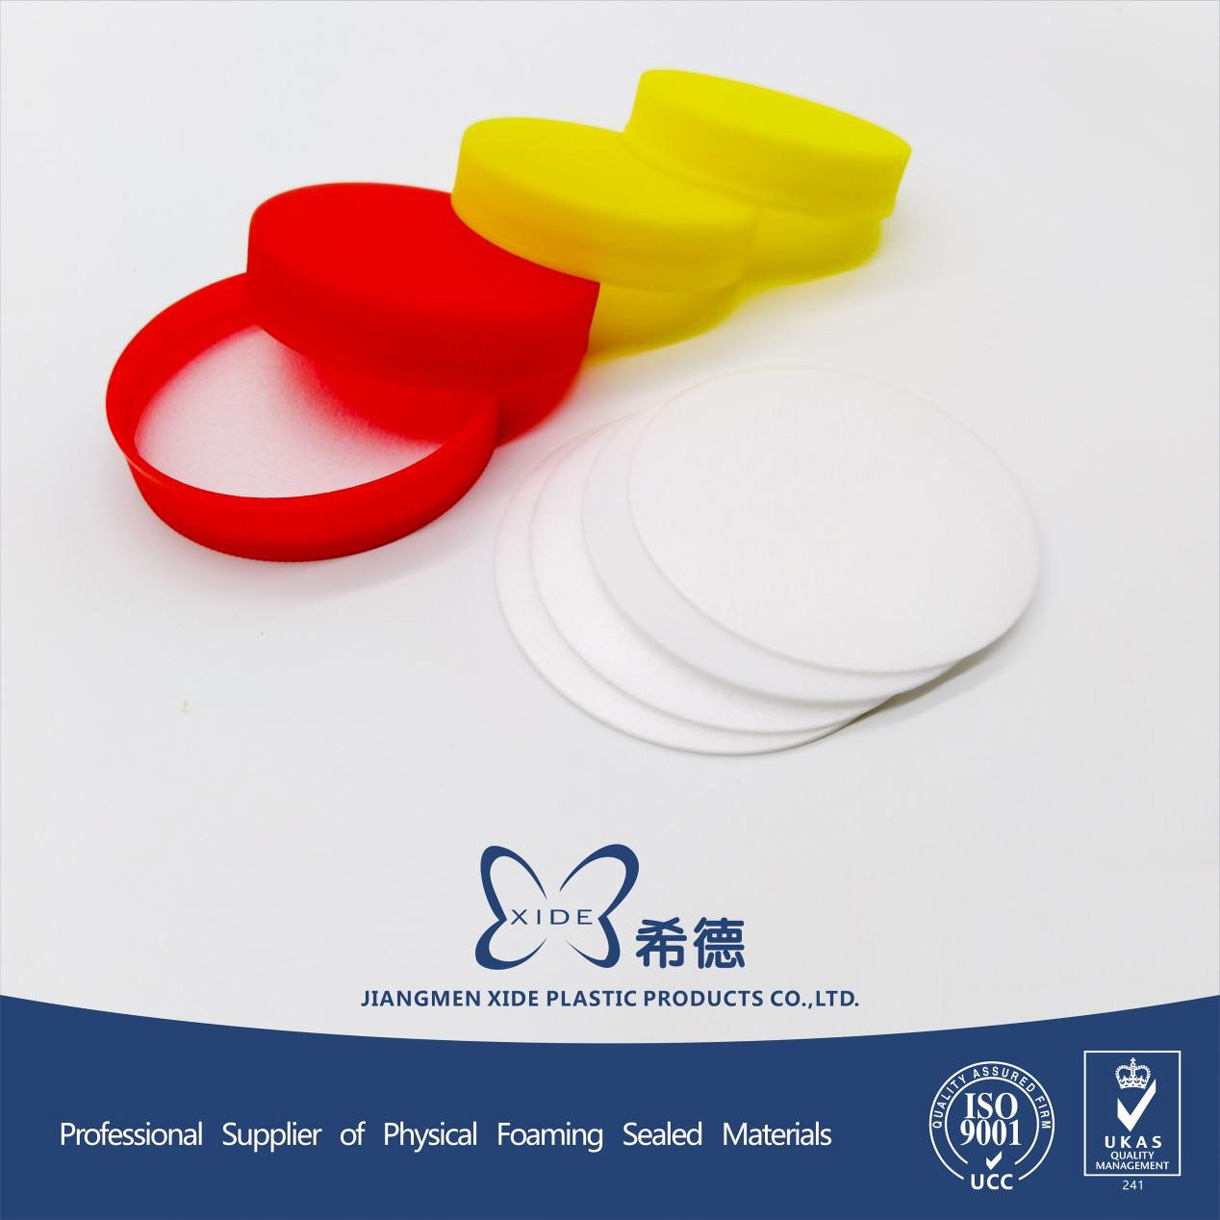 江门市希德塑料制品有限公司-中国上海国际包装展展览会